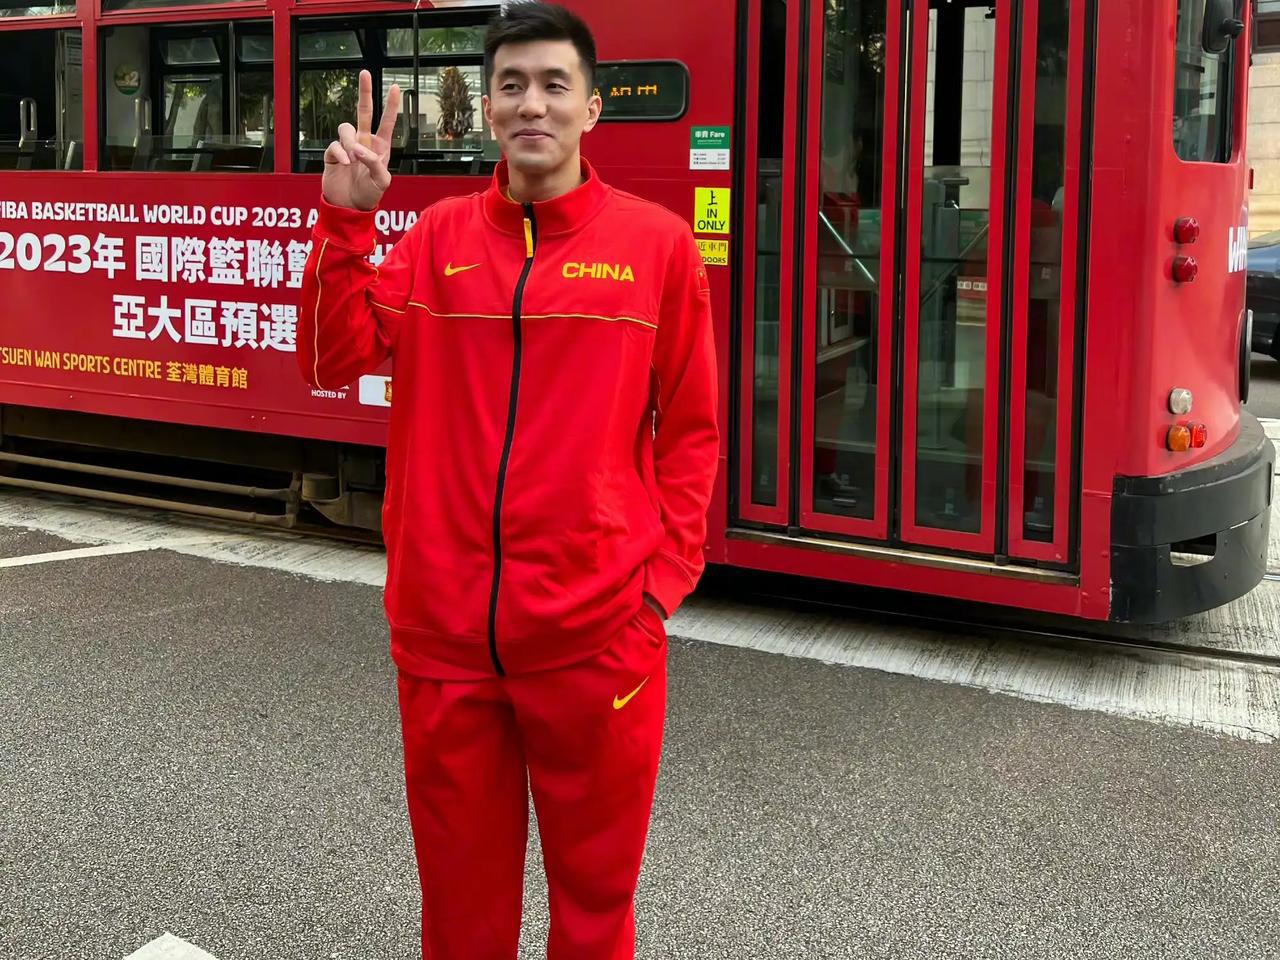 郭艾伦出现发烧和咳嗽的情况，他可能会缺席与上海男篮的比赛！

郭艾伦本人在北京时(1)